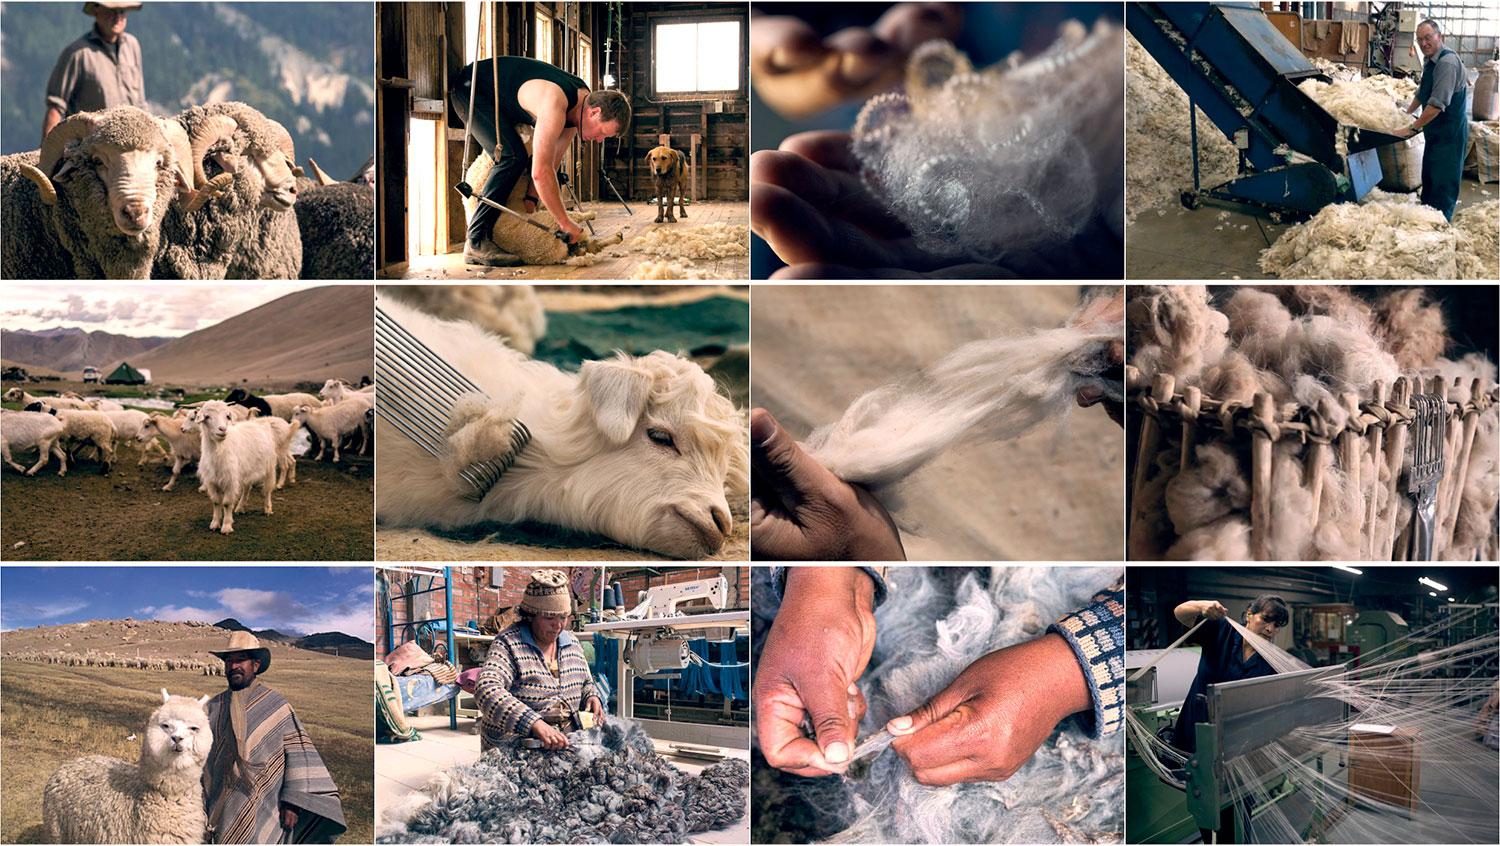 Najkvalitnejšia tkanina sa získava z vlny oviec Merino a vyčesaného rúna angorskej kozy.